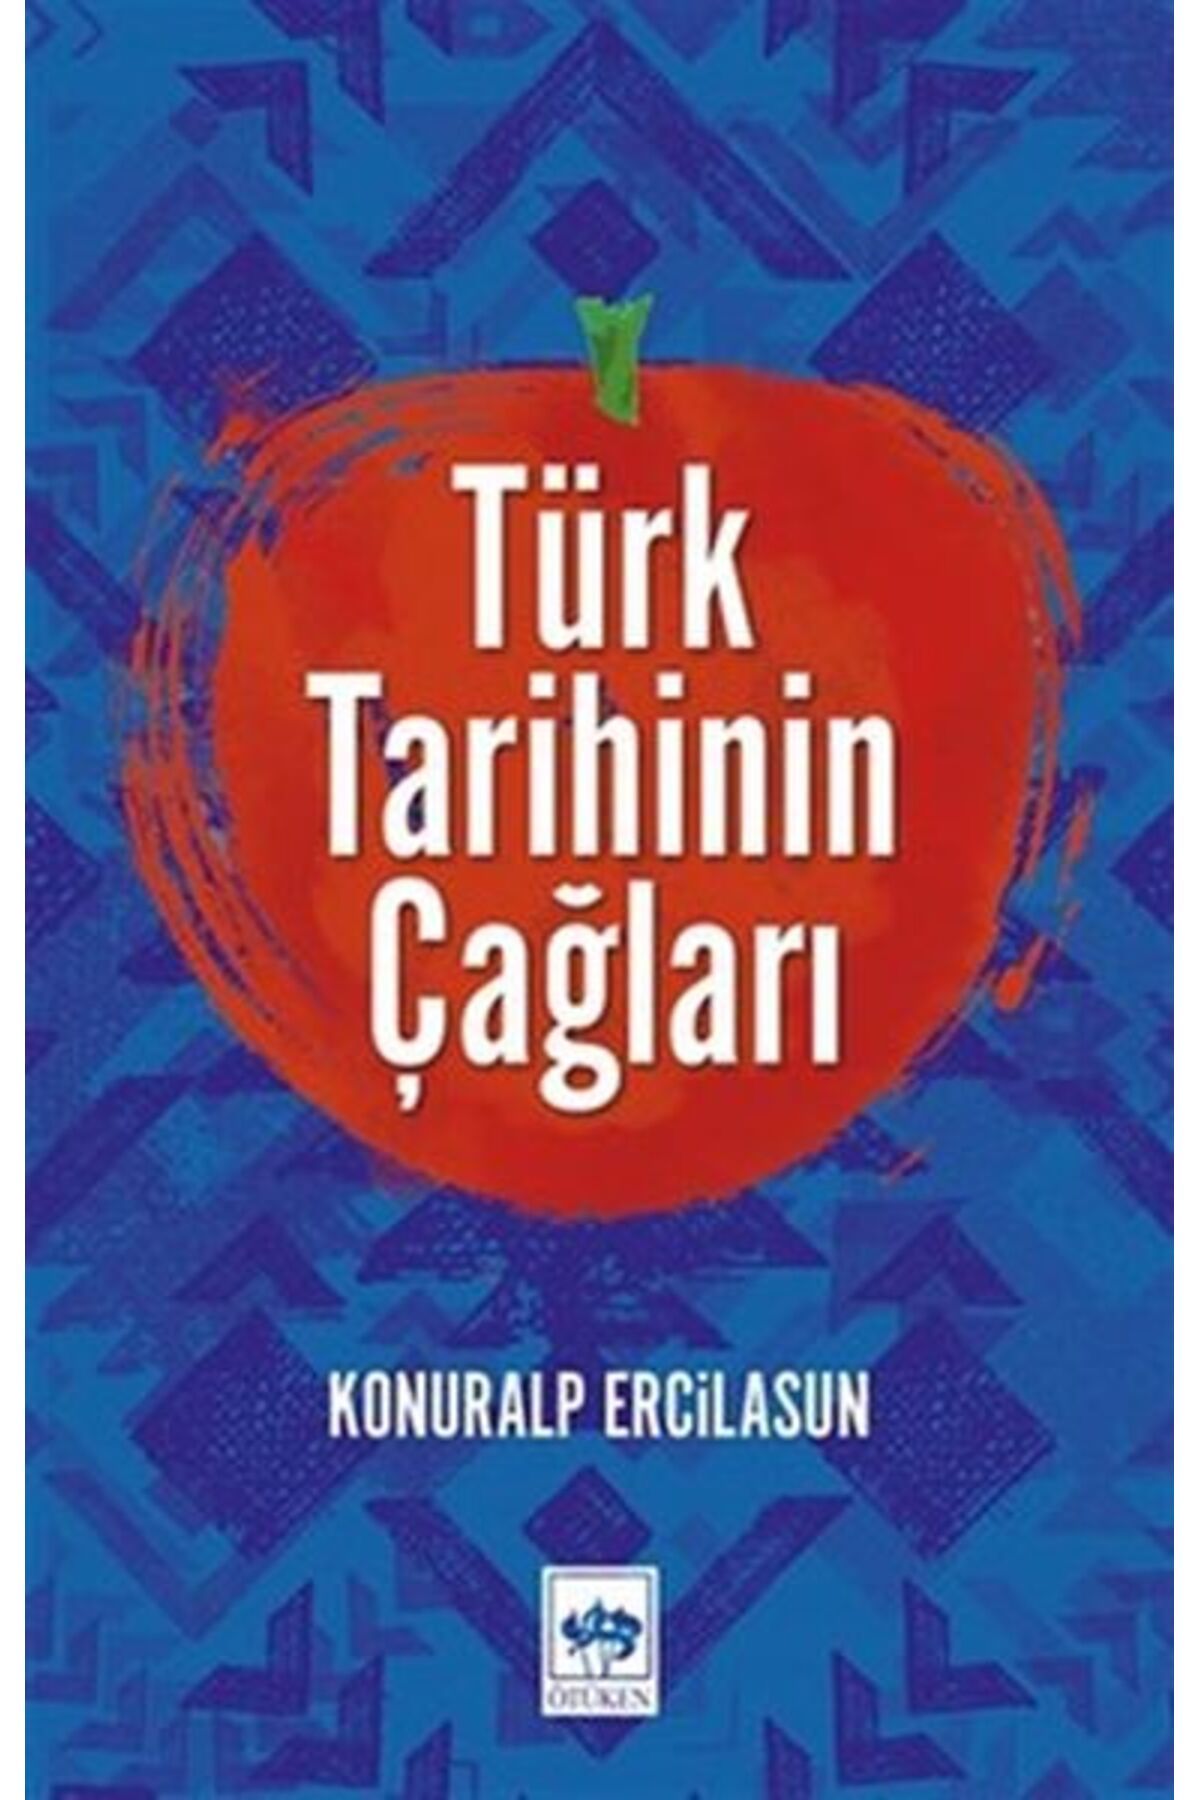 Ötüken Yayınları Türk Tarihinin Çağları